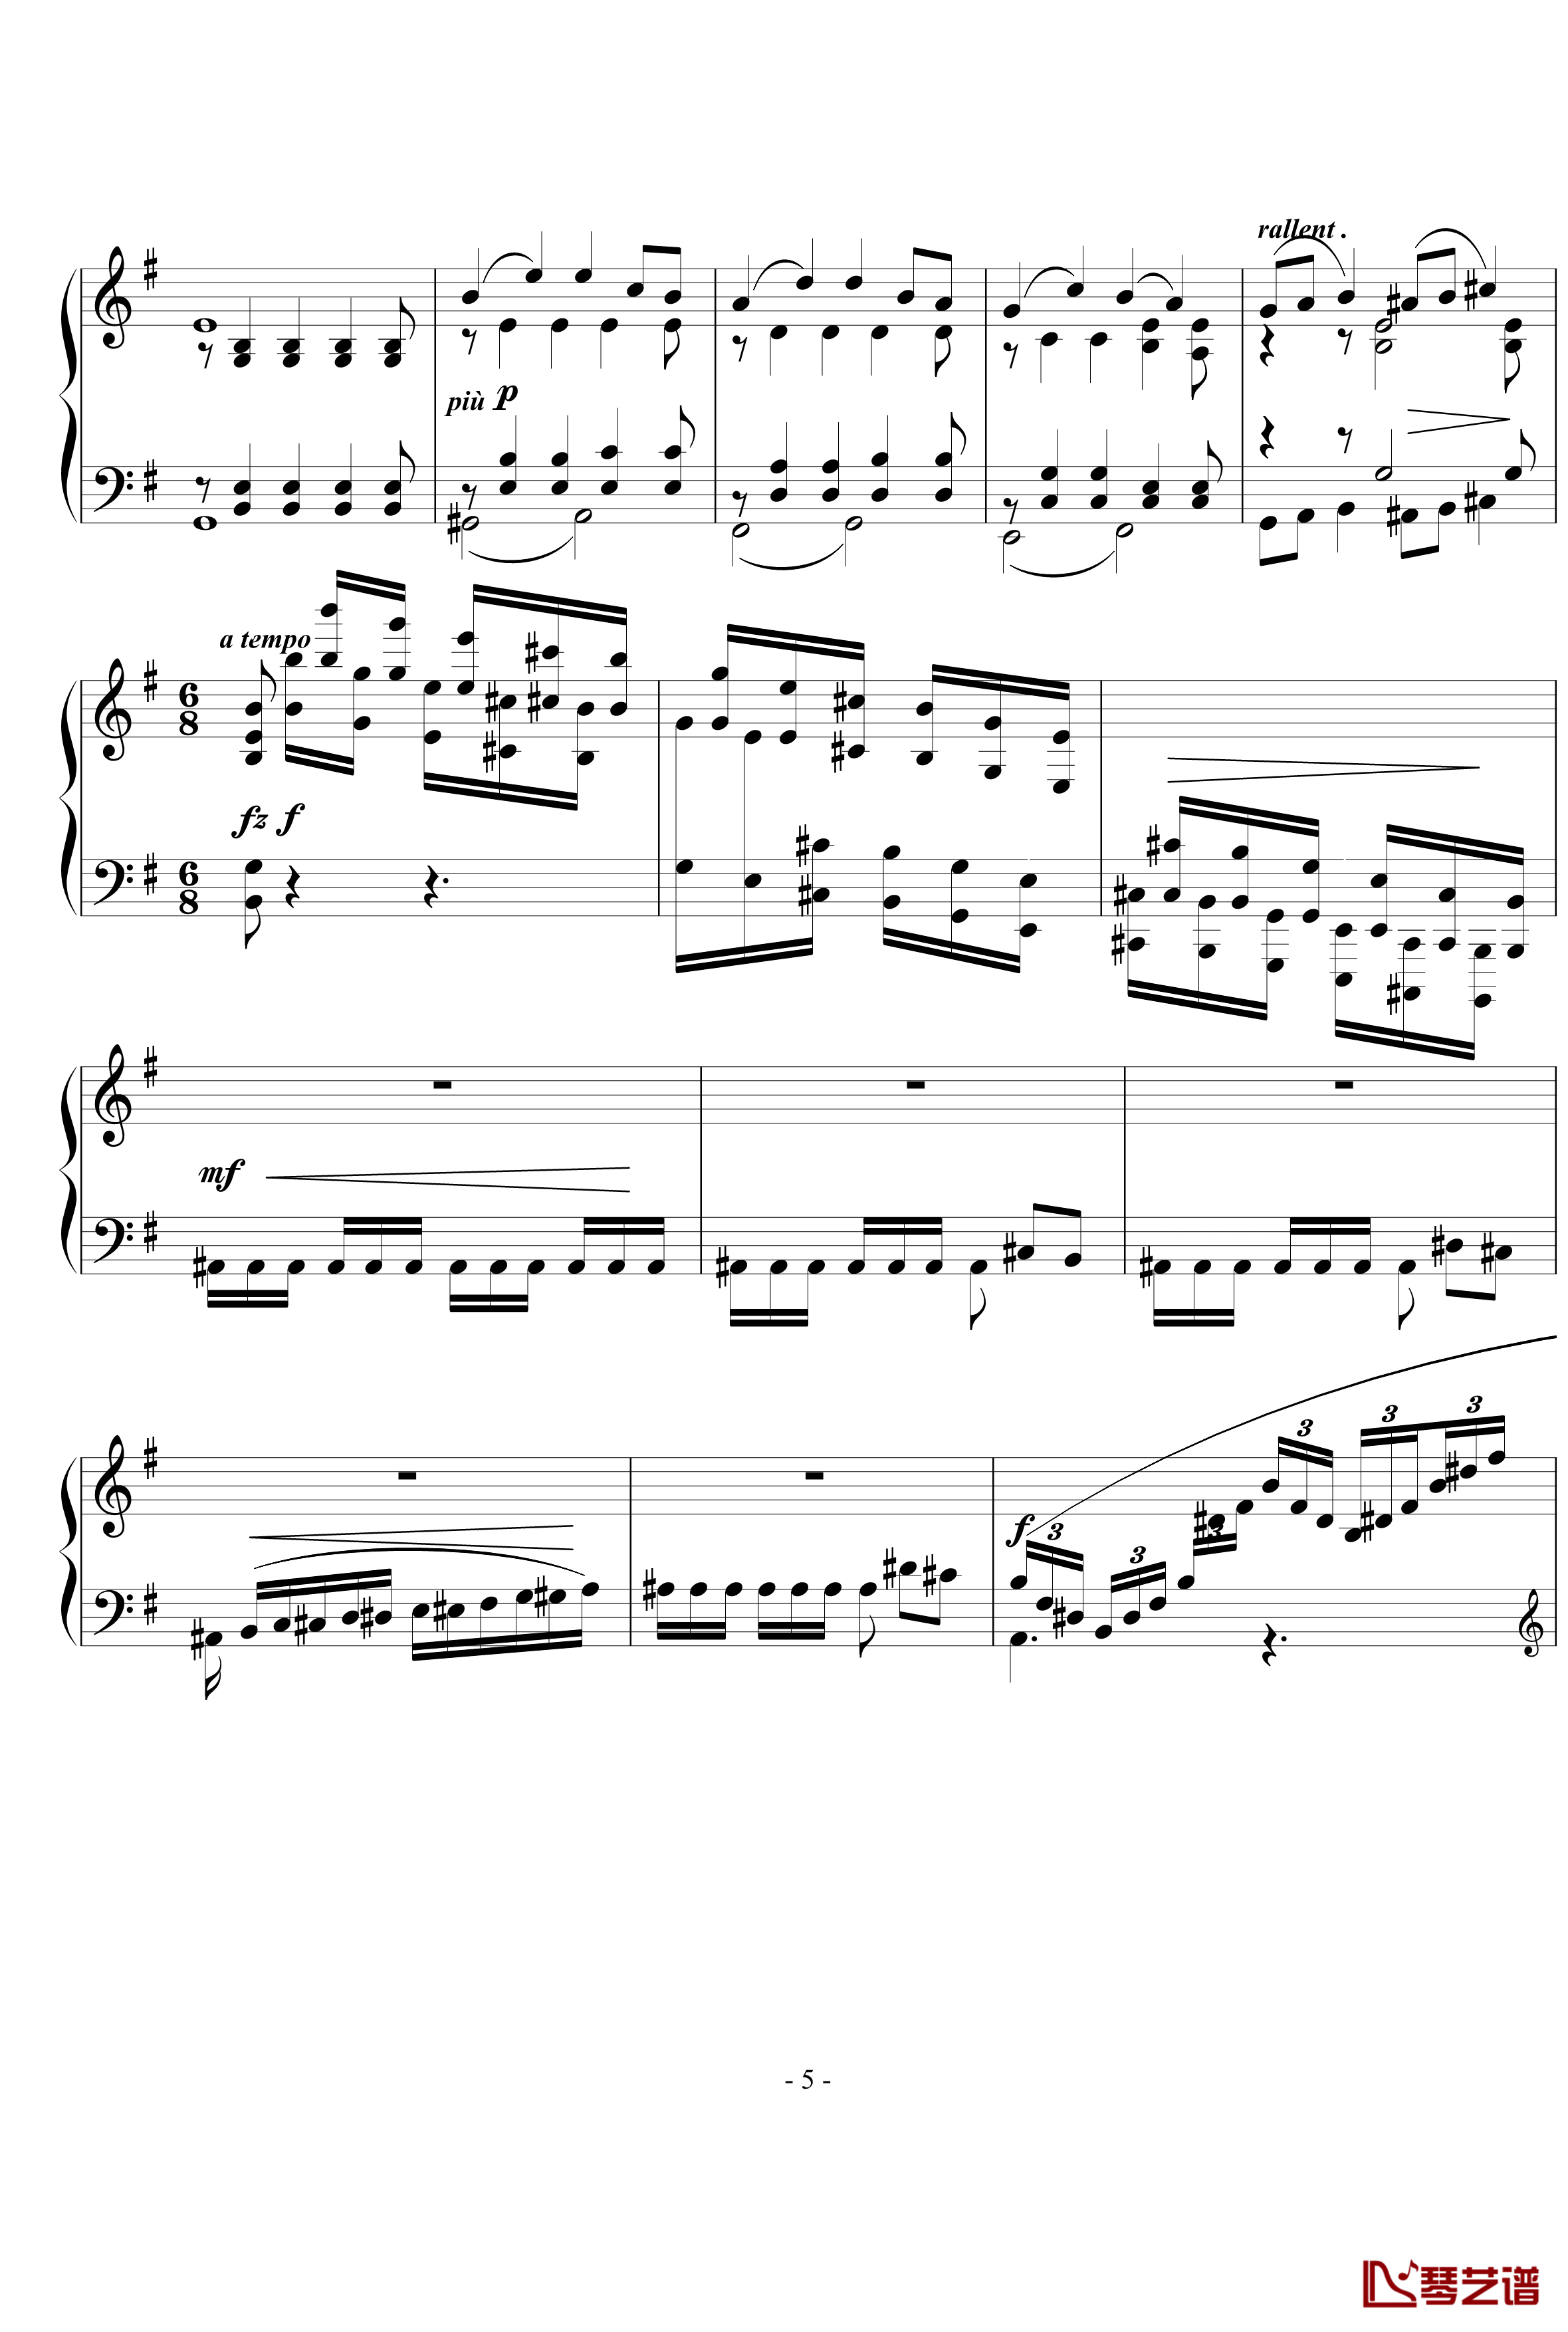 小随想曲钢琴谱-西贝柳斯5